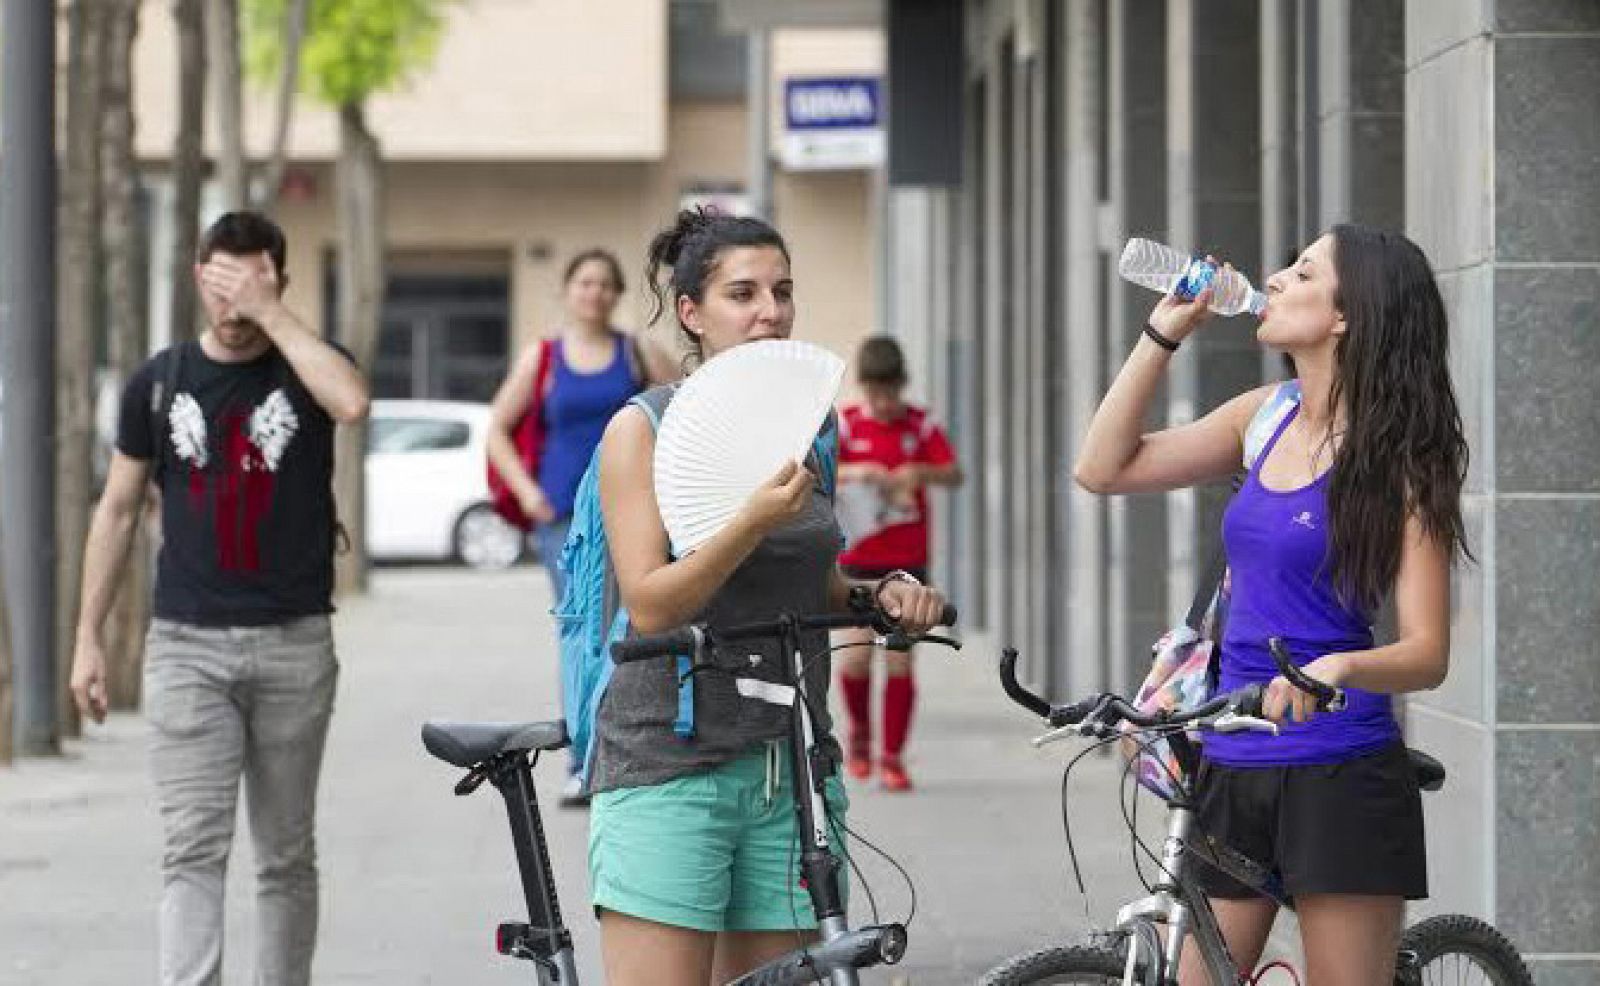 Unas chicas en bicicleta se refrescaban el 13 de mayo en Lleida ante la ola de calor veraniego.